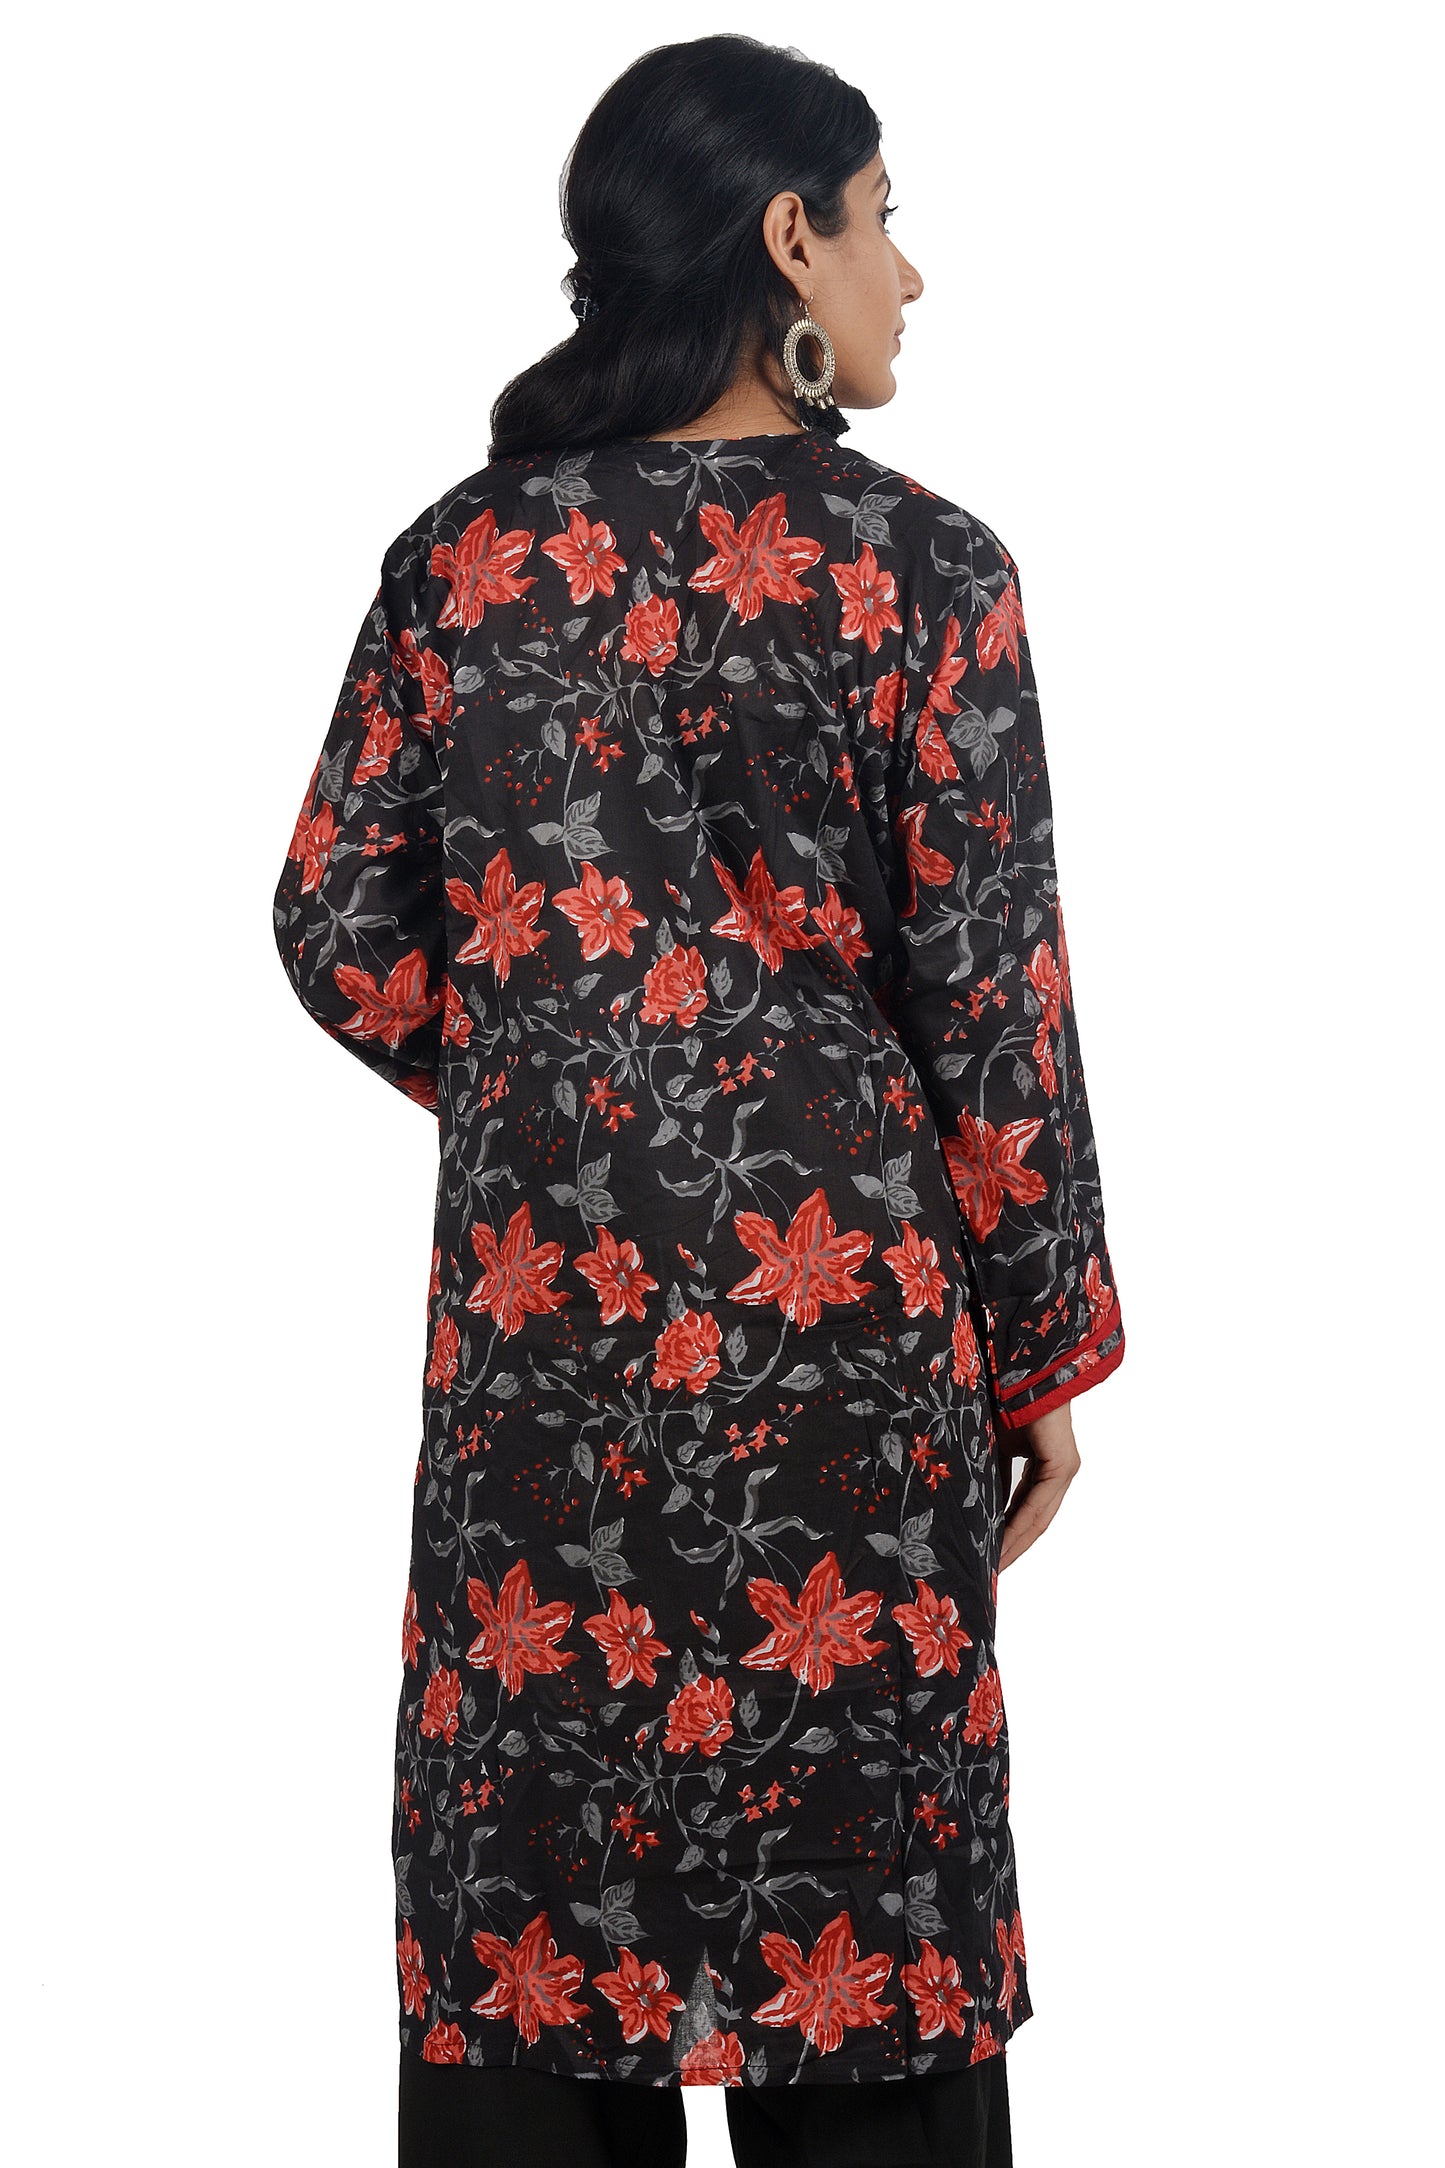 Black  Red Cotton  Floral print  Dress Salwar kameez  Plus chest  Size 50